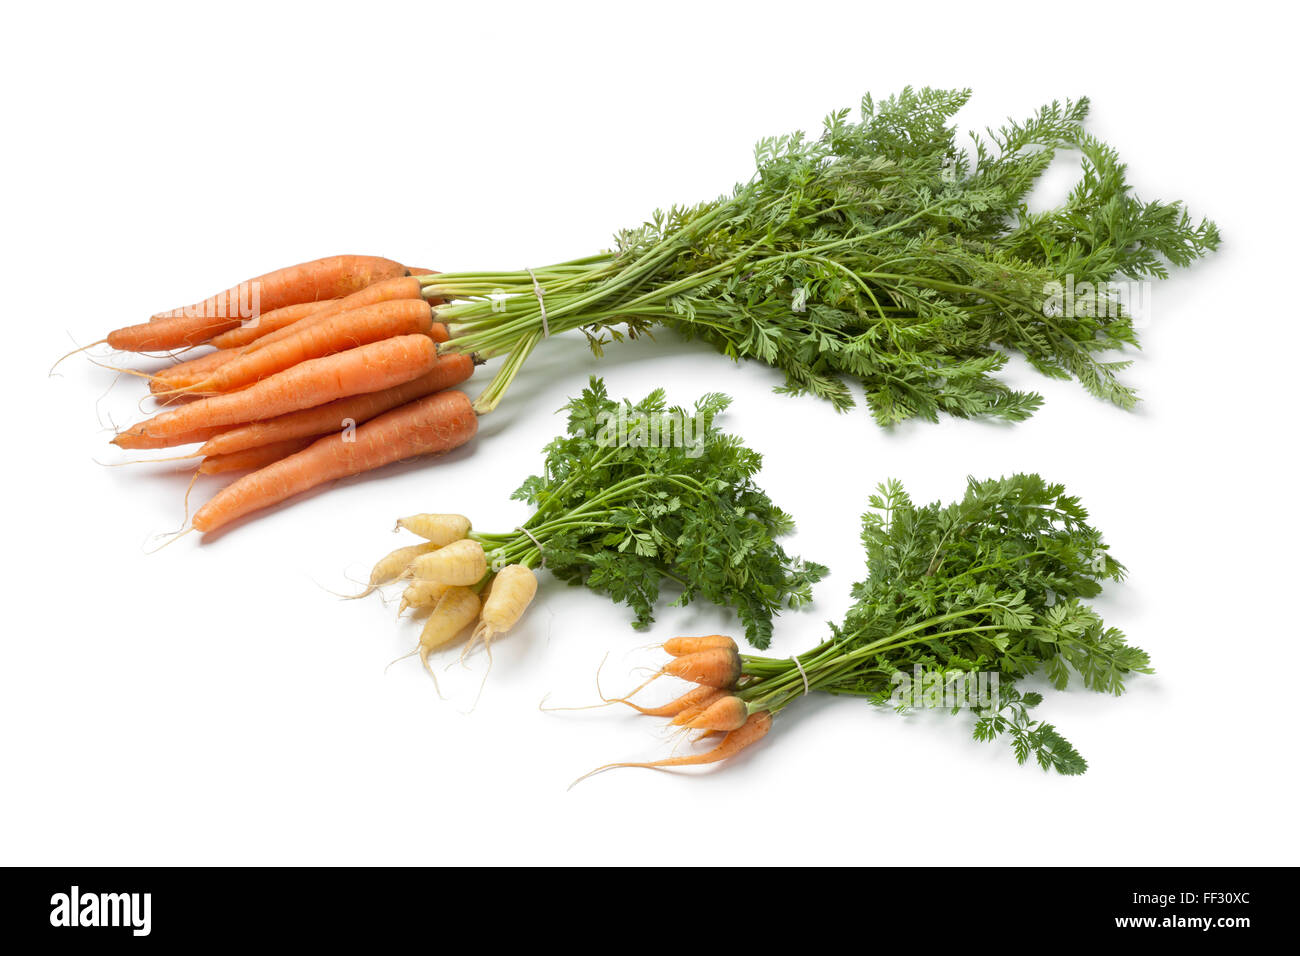 Frische Karotten und Mini Karotten zu sehen, der Unterschied in der Größe auf weißem Hintergrund Stockfoto